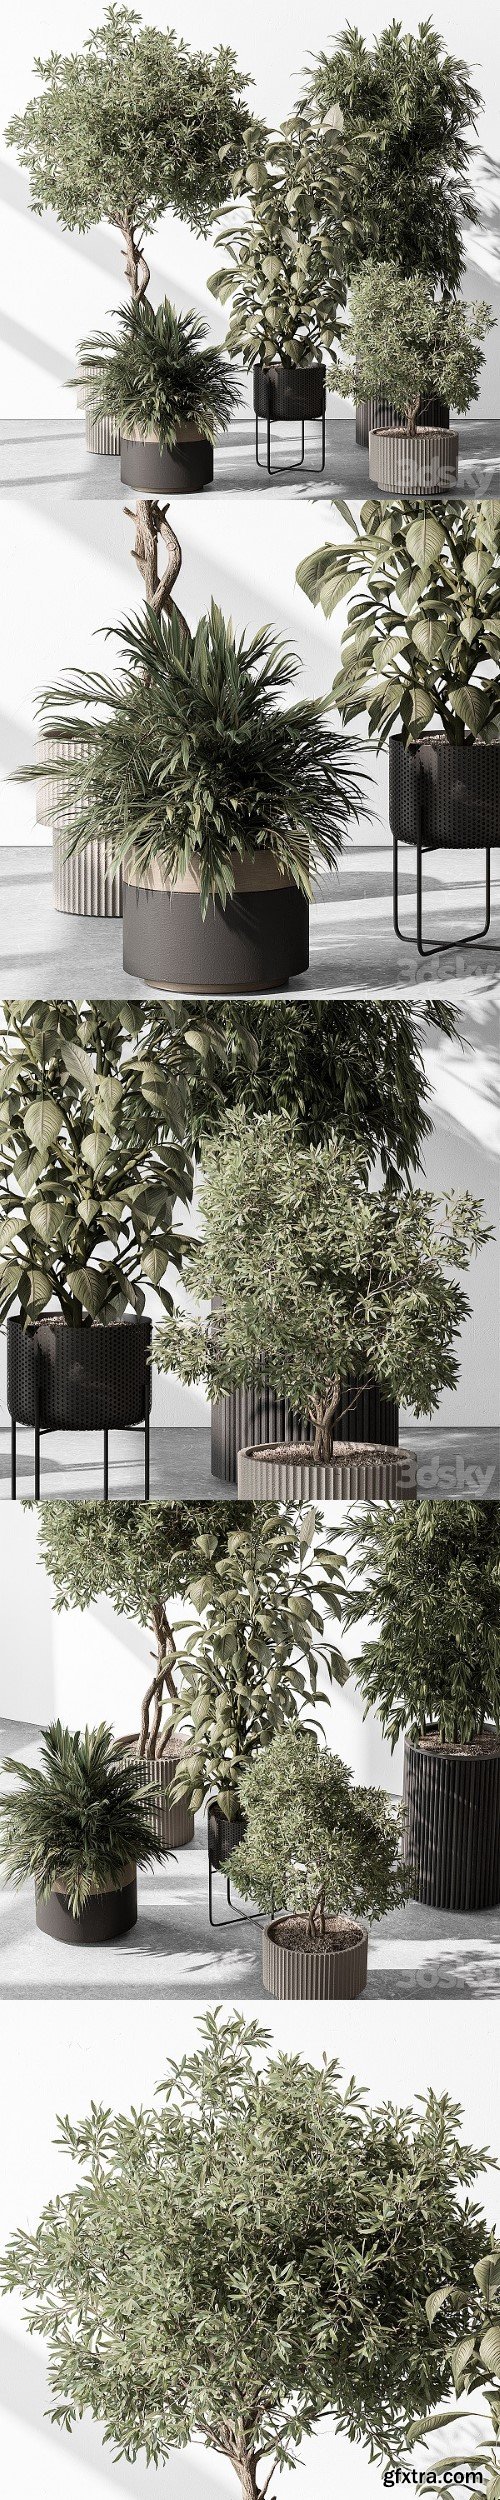 Indoor Plant 531 Tree in Pot